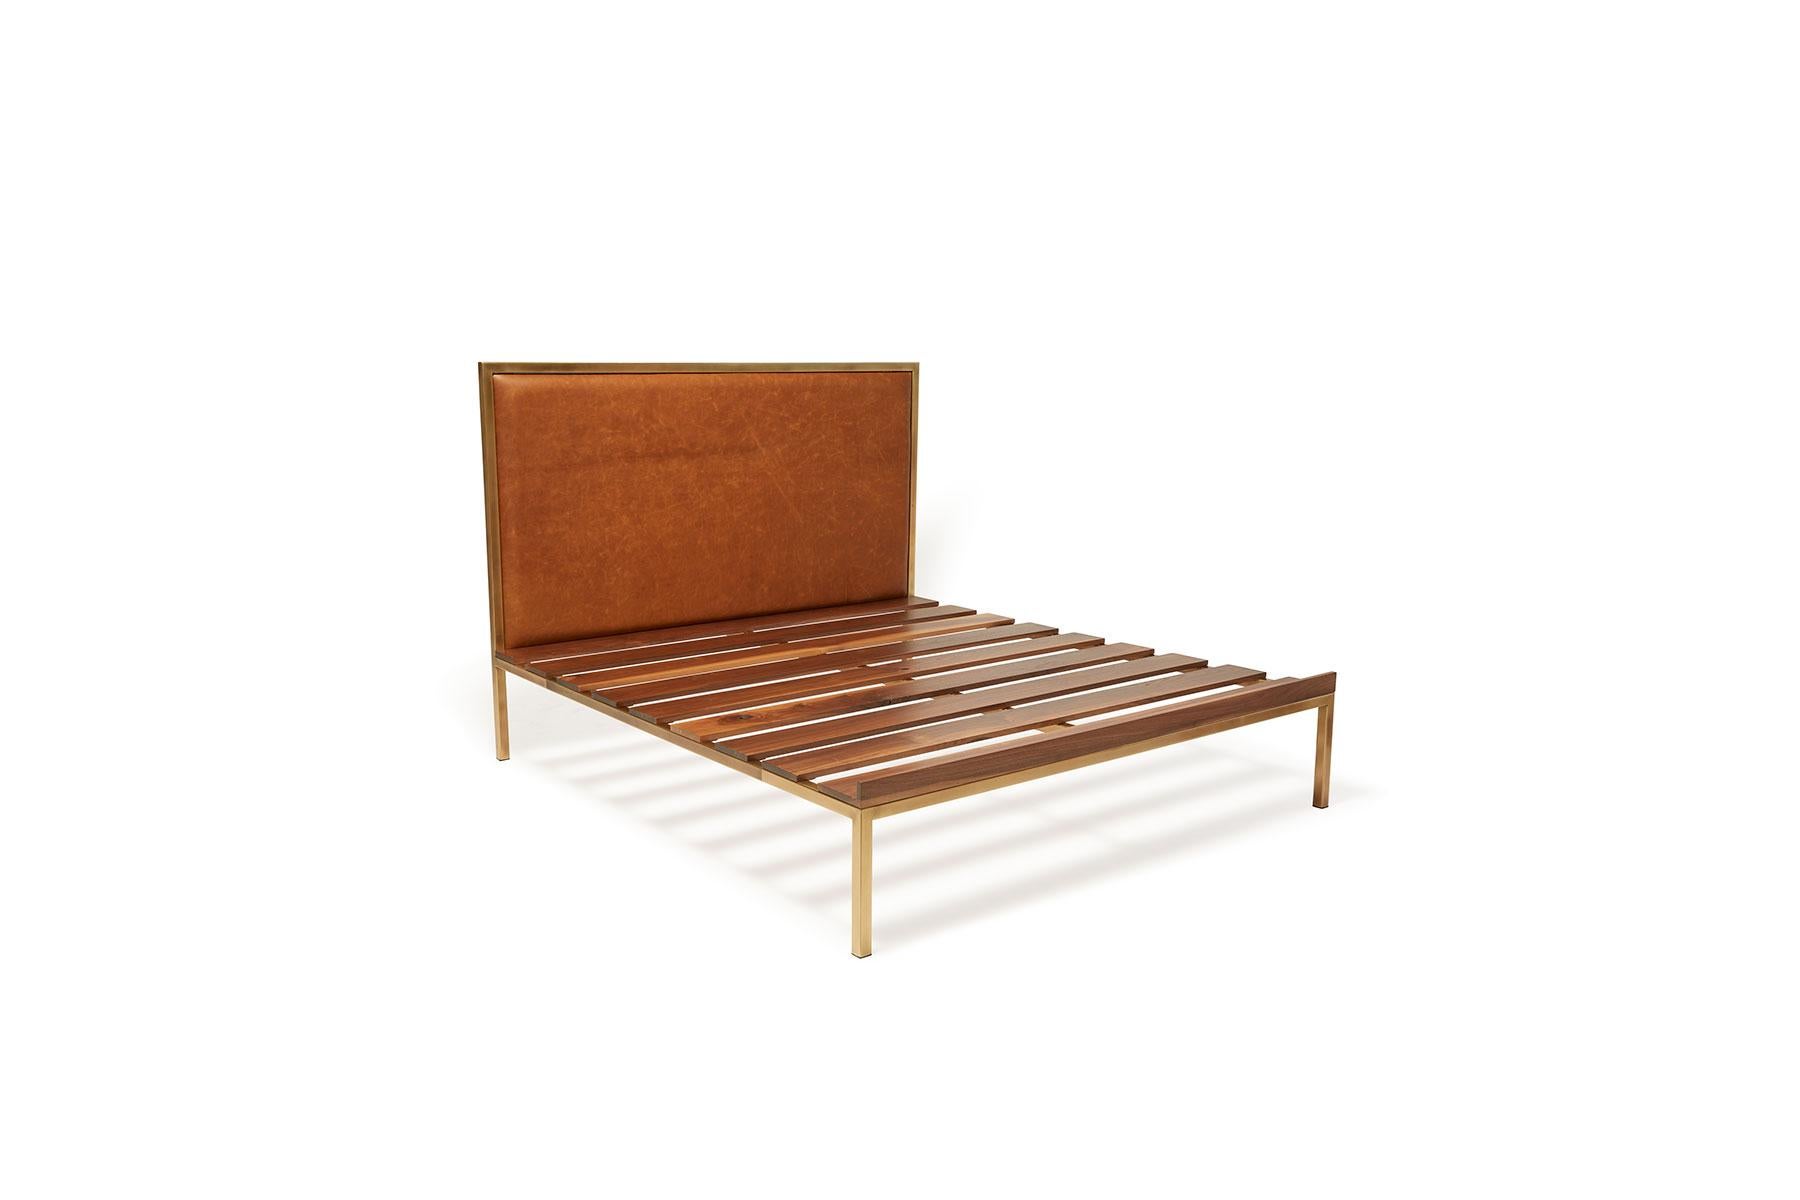 Erholen Sie sich mit Stil im Inheritance-Bett von Stephen Kenn. 

Bei dieser minimalistischen Variante fehlen die eingebauten Nachttische und die Bank. 

Ausgehend von einem Stahlrohrrahmen aus antikem Messing werden Walnussholzlatten über die